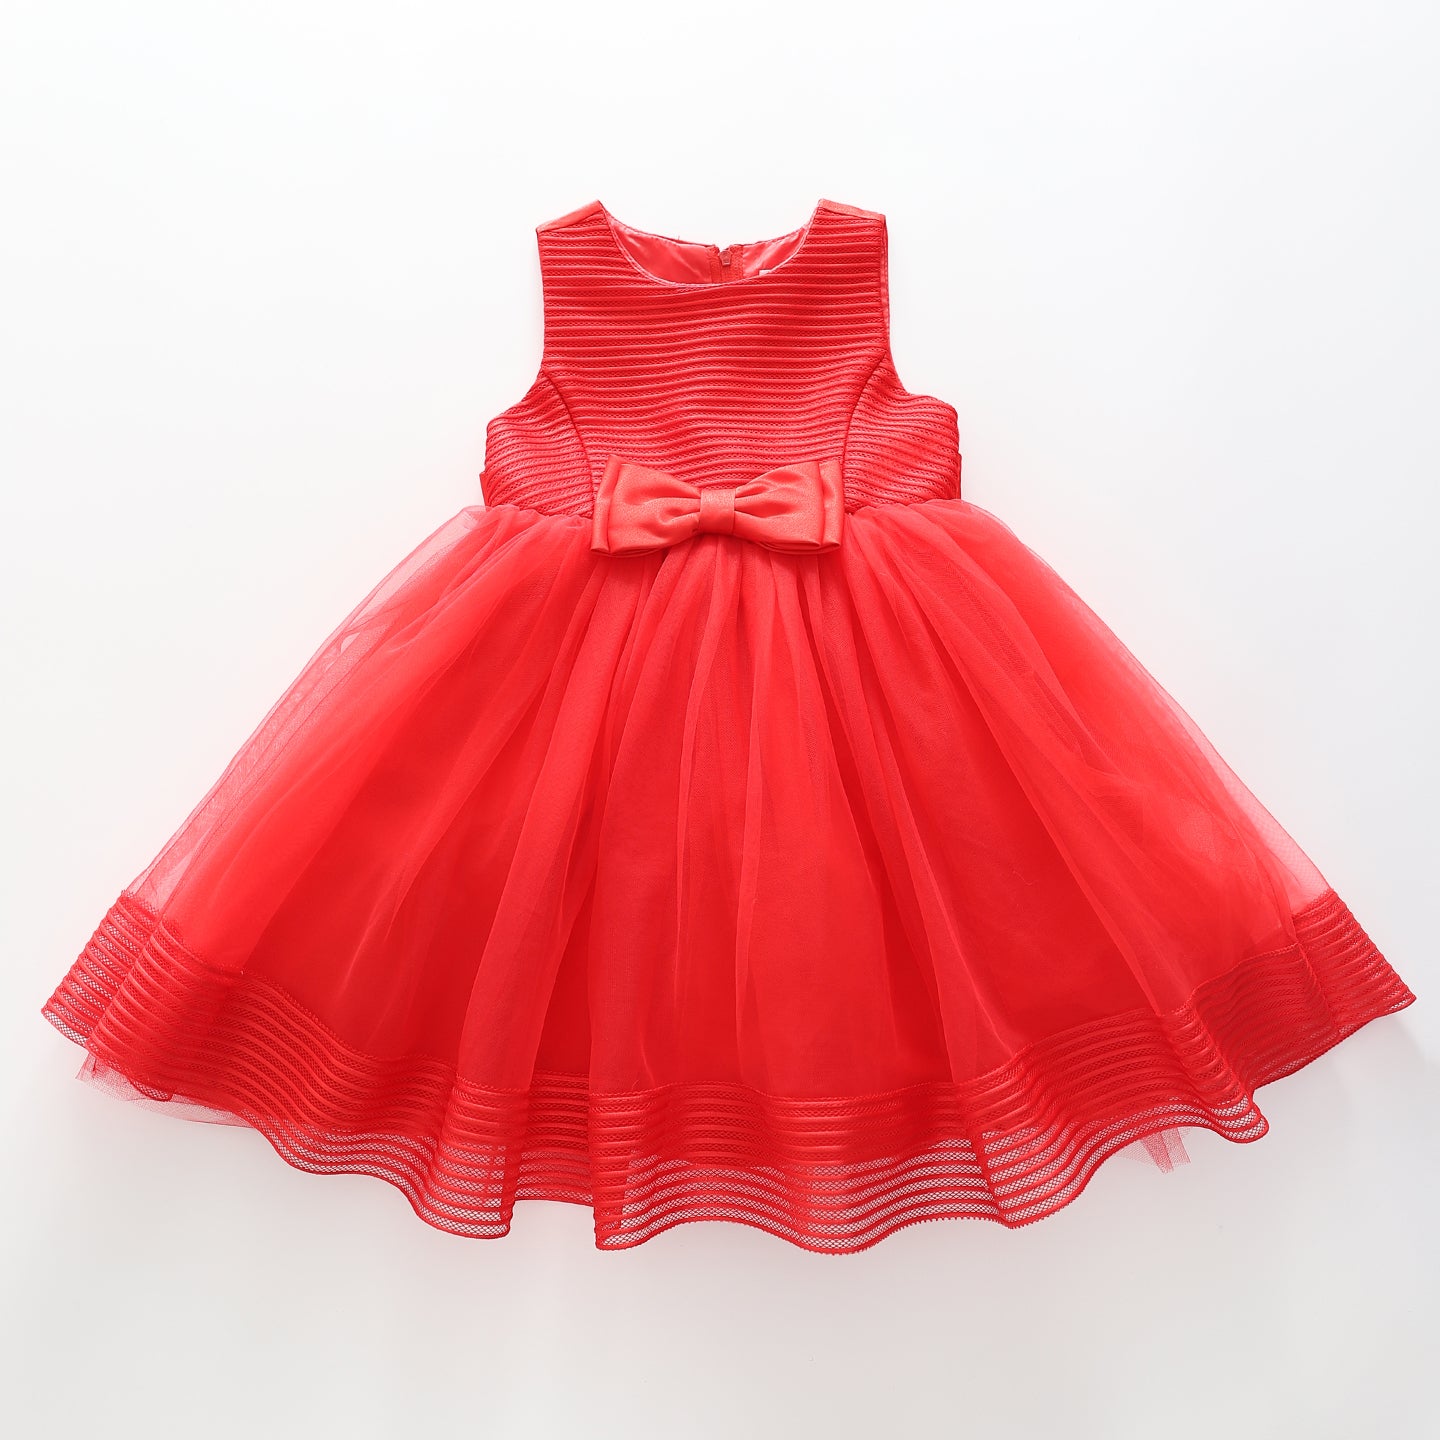 Girls' Elegant Tulle Formalwear Dress - Red